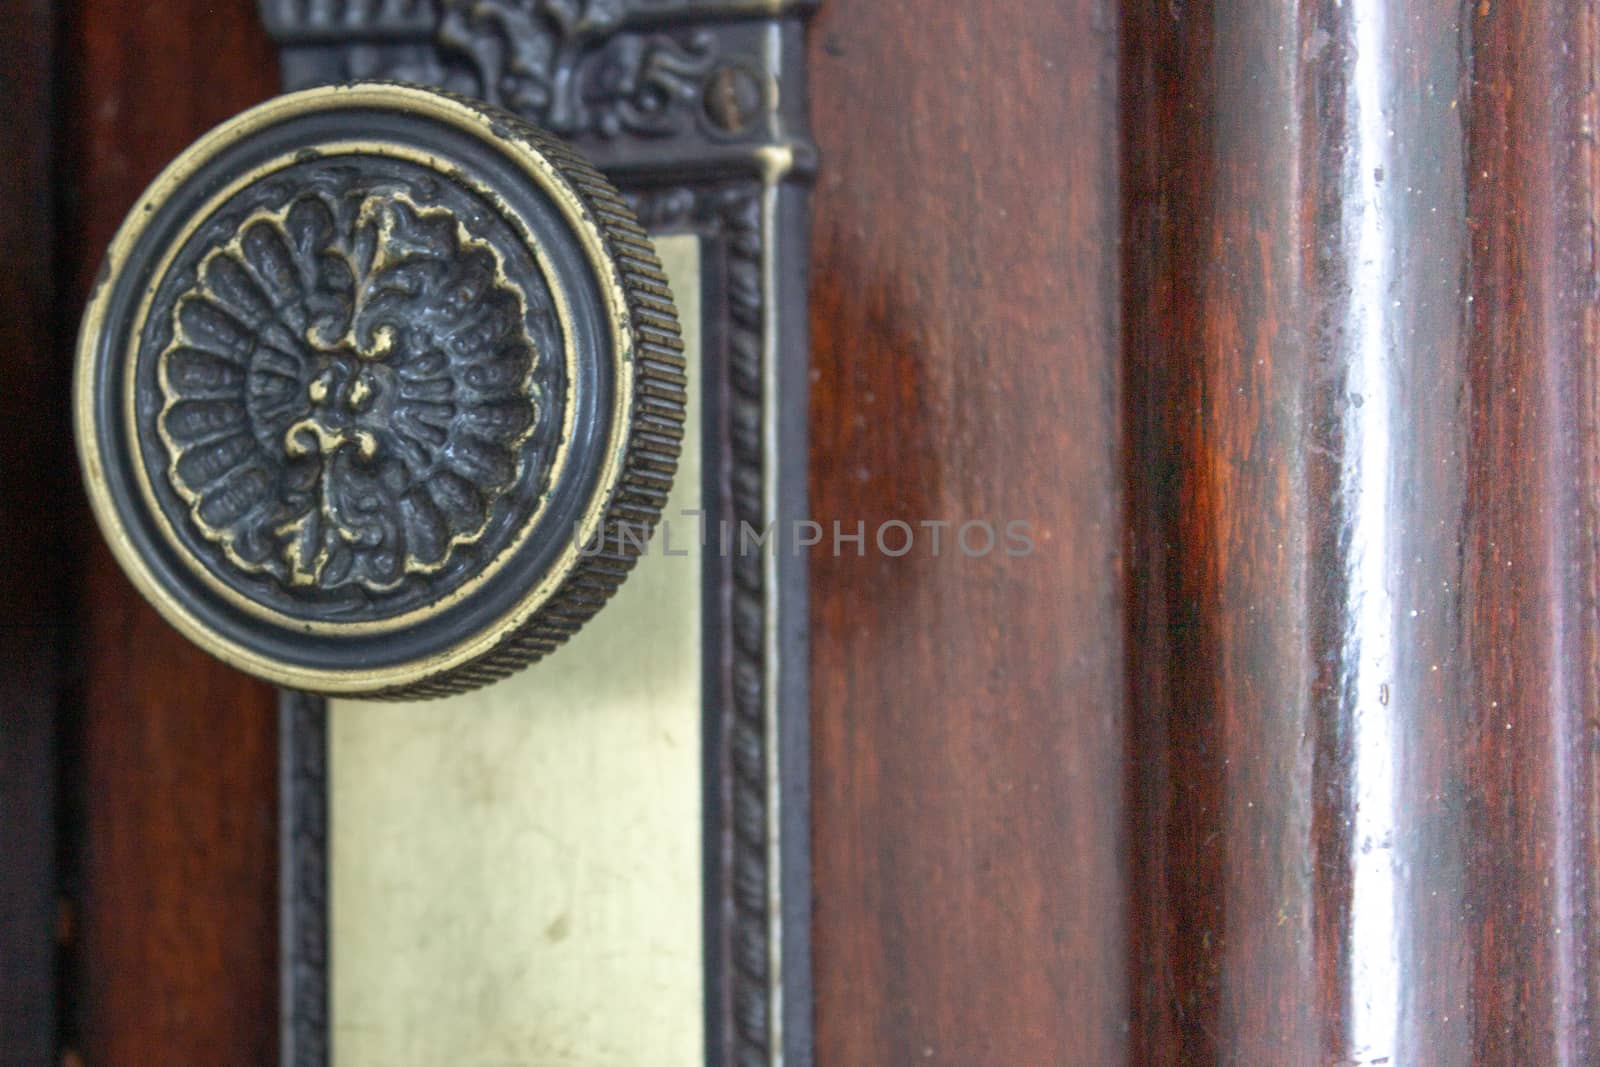 Closeup of a round door handle on a dark wooden door